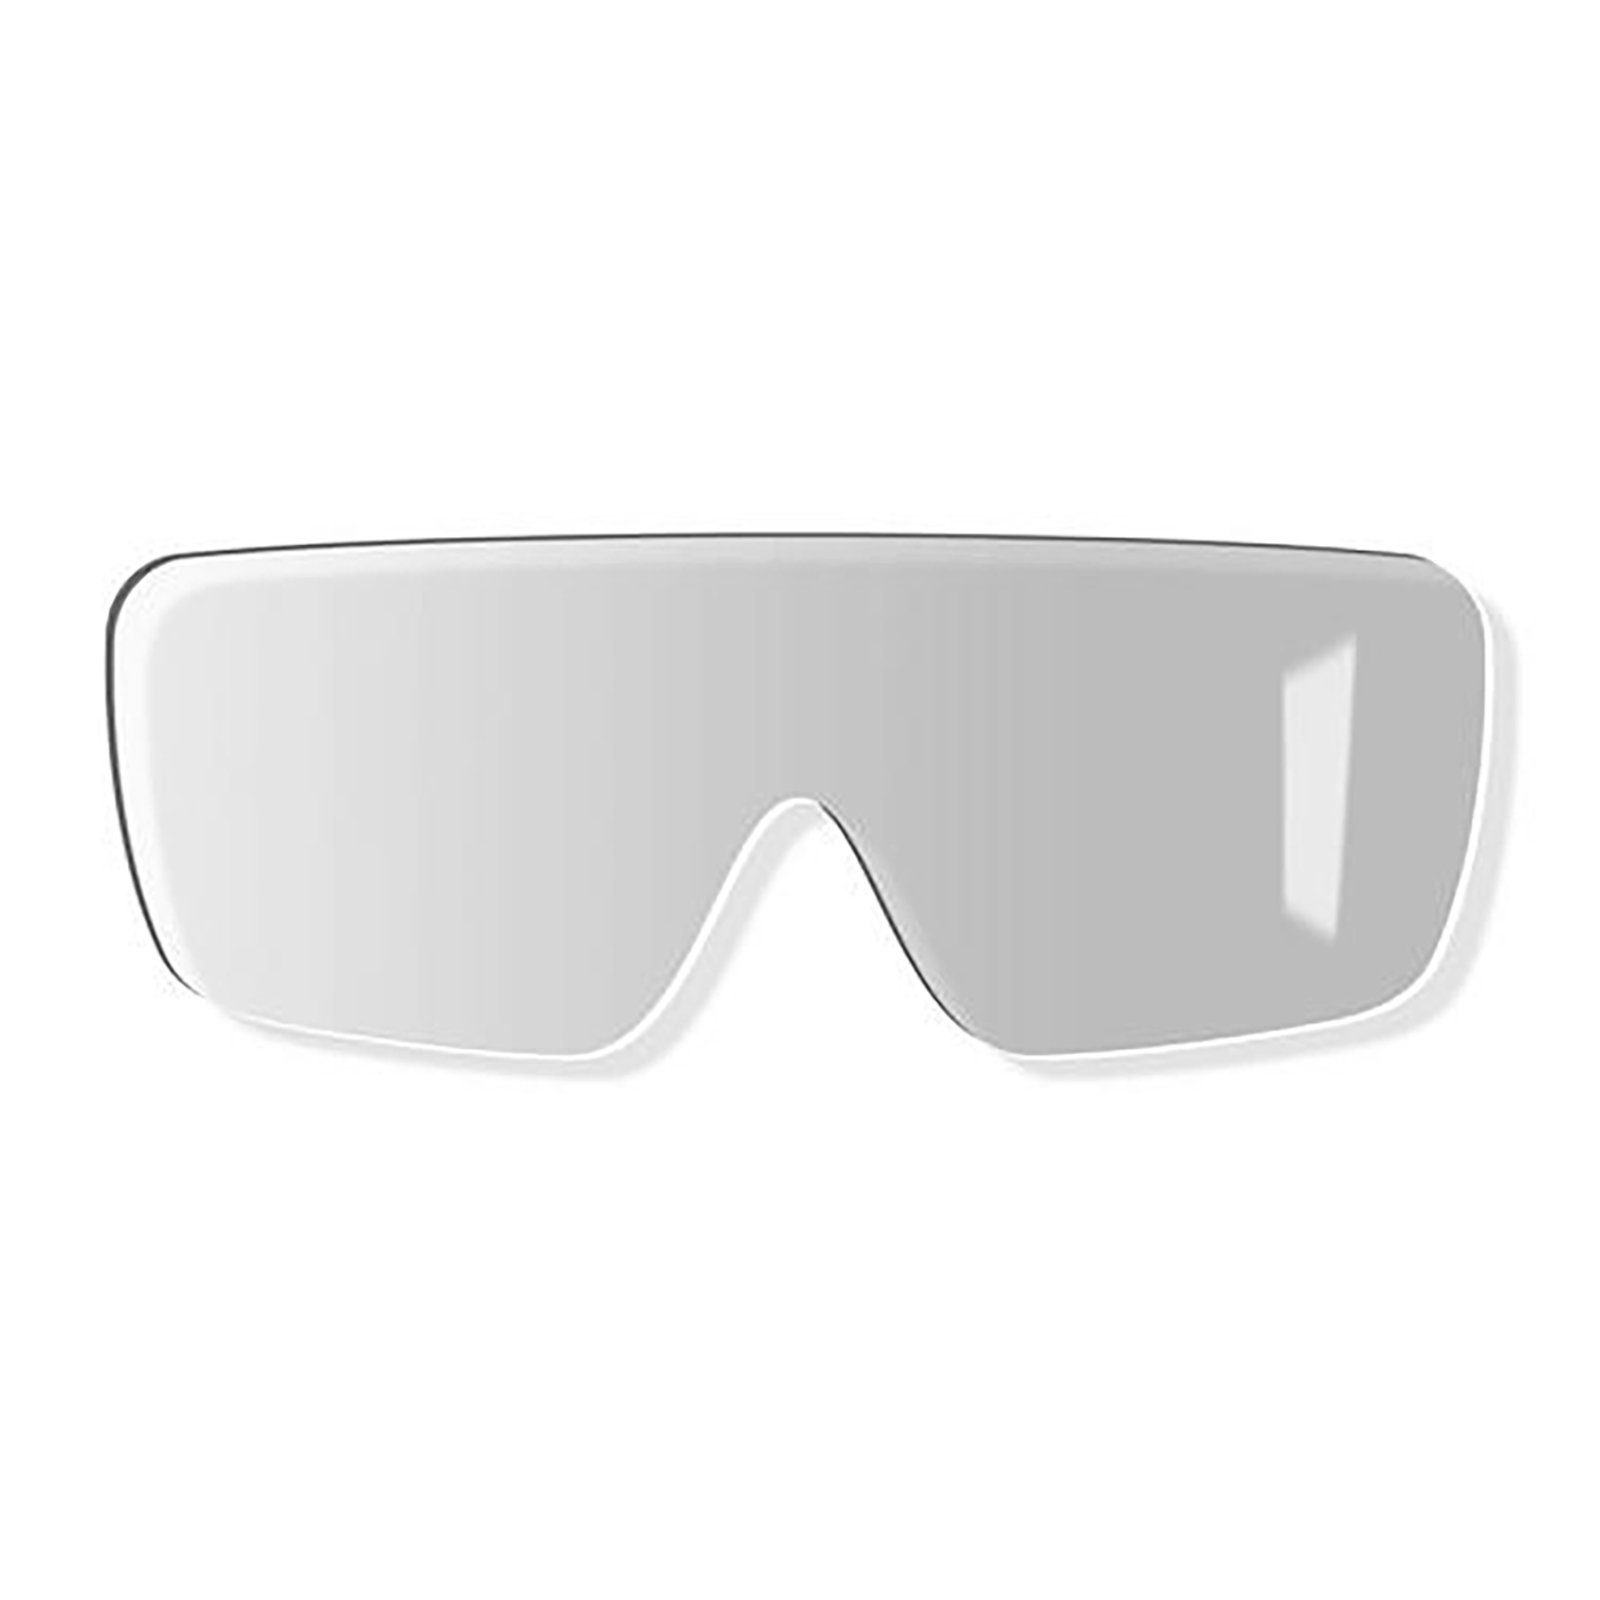 Uvex Arbeitsschutzbrille Ersatzscheibe 9302259 sv clean